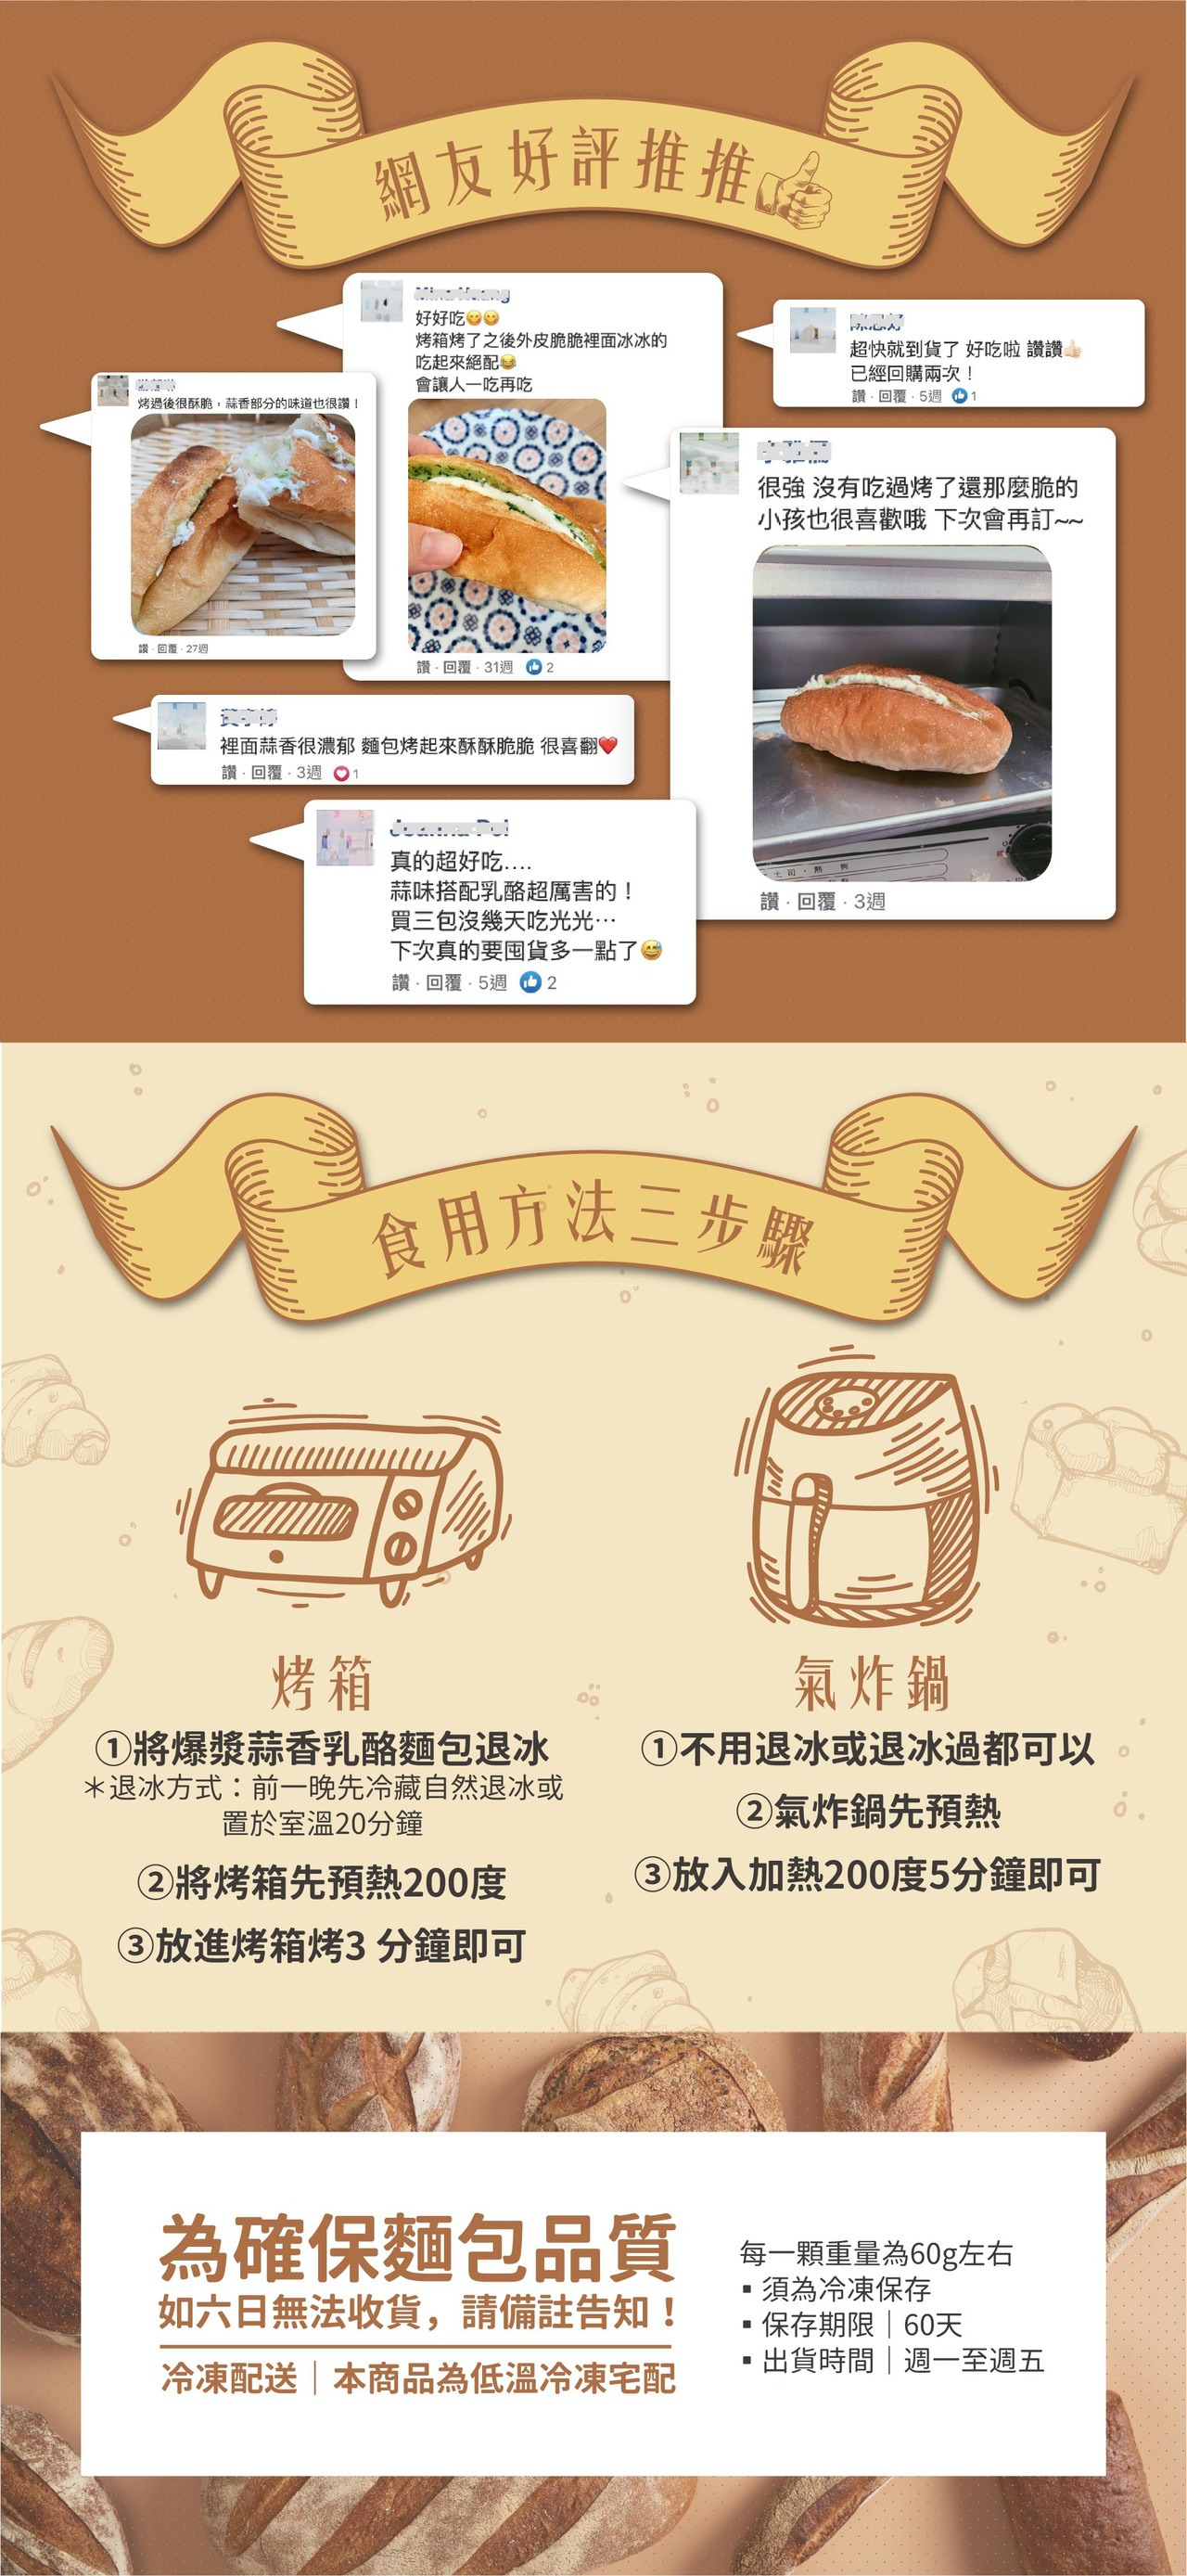 韓國爆紅爆漿奶油大蒜麵包與爆漿奶油大蒜麵包在光光盒餐都買得到